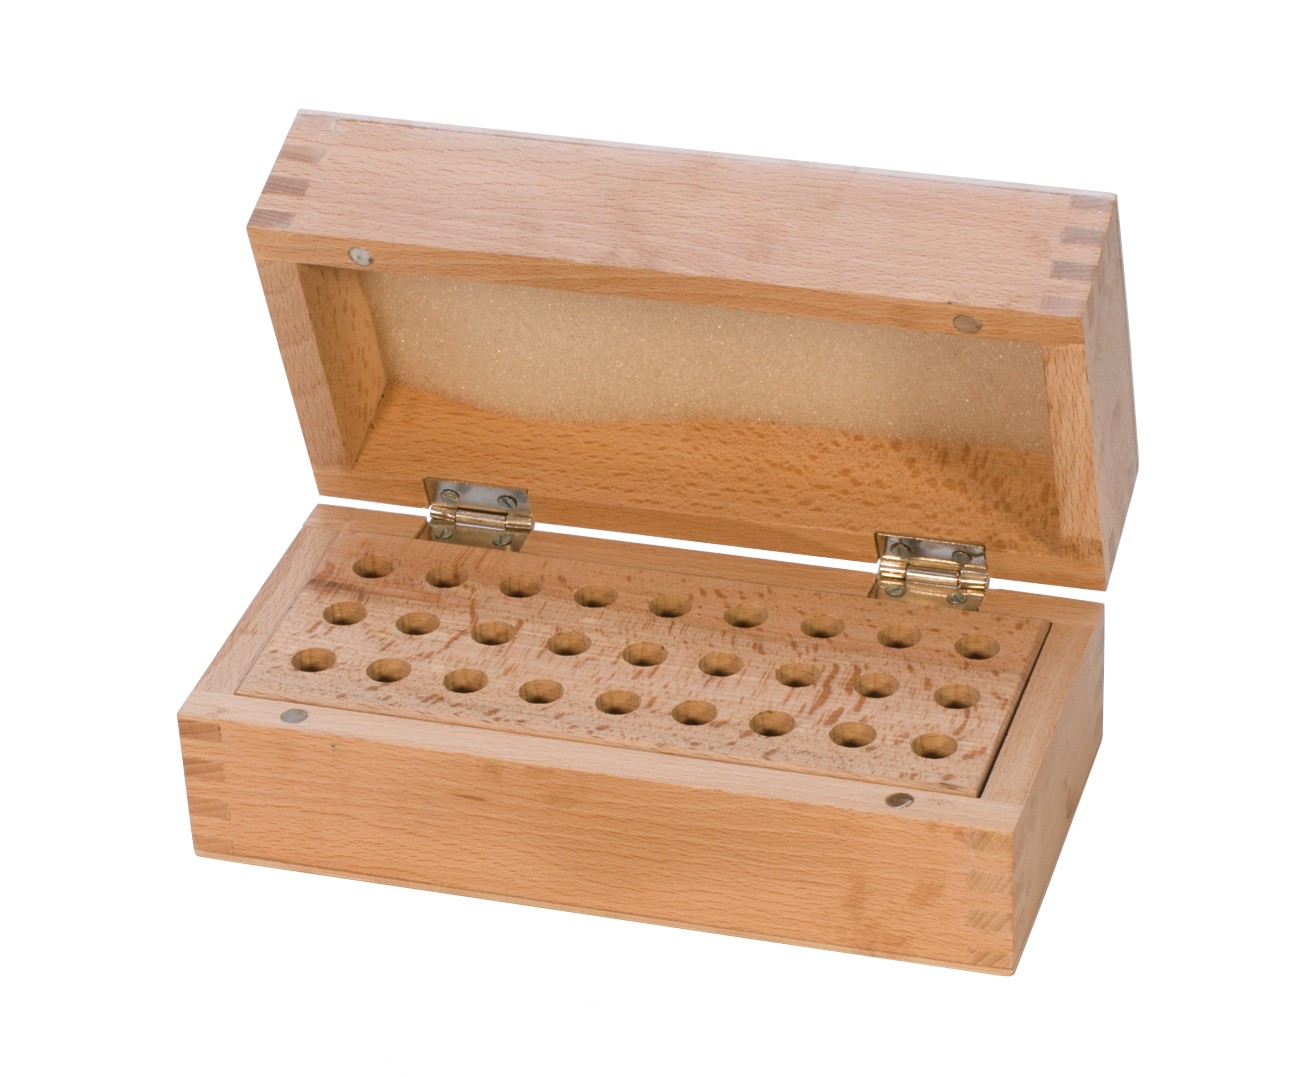 Wooden Stamp Storage Box Organizer with 27 Holes, PKG-117.00